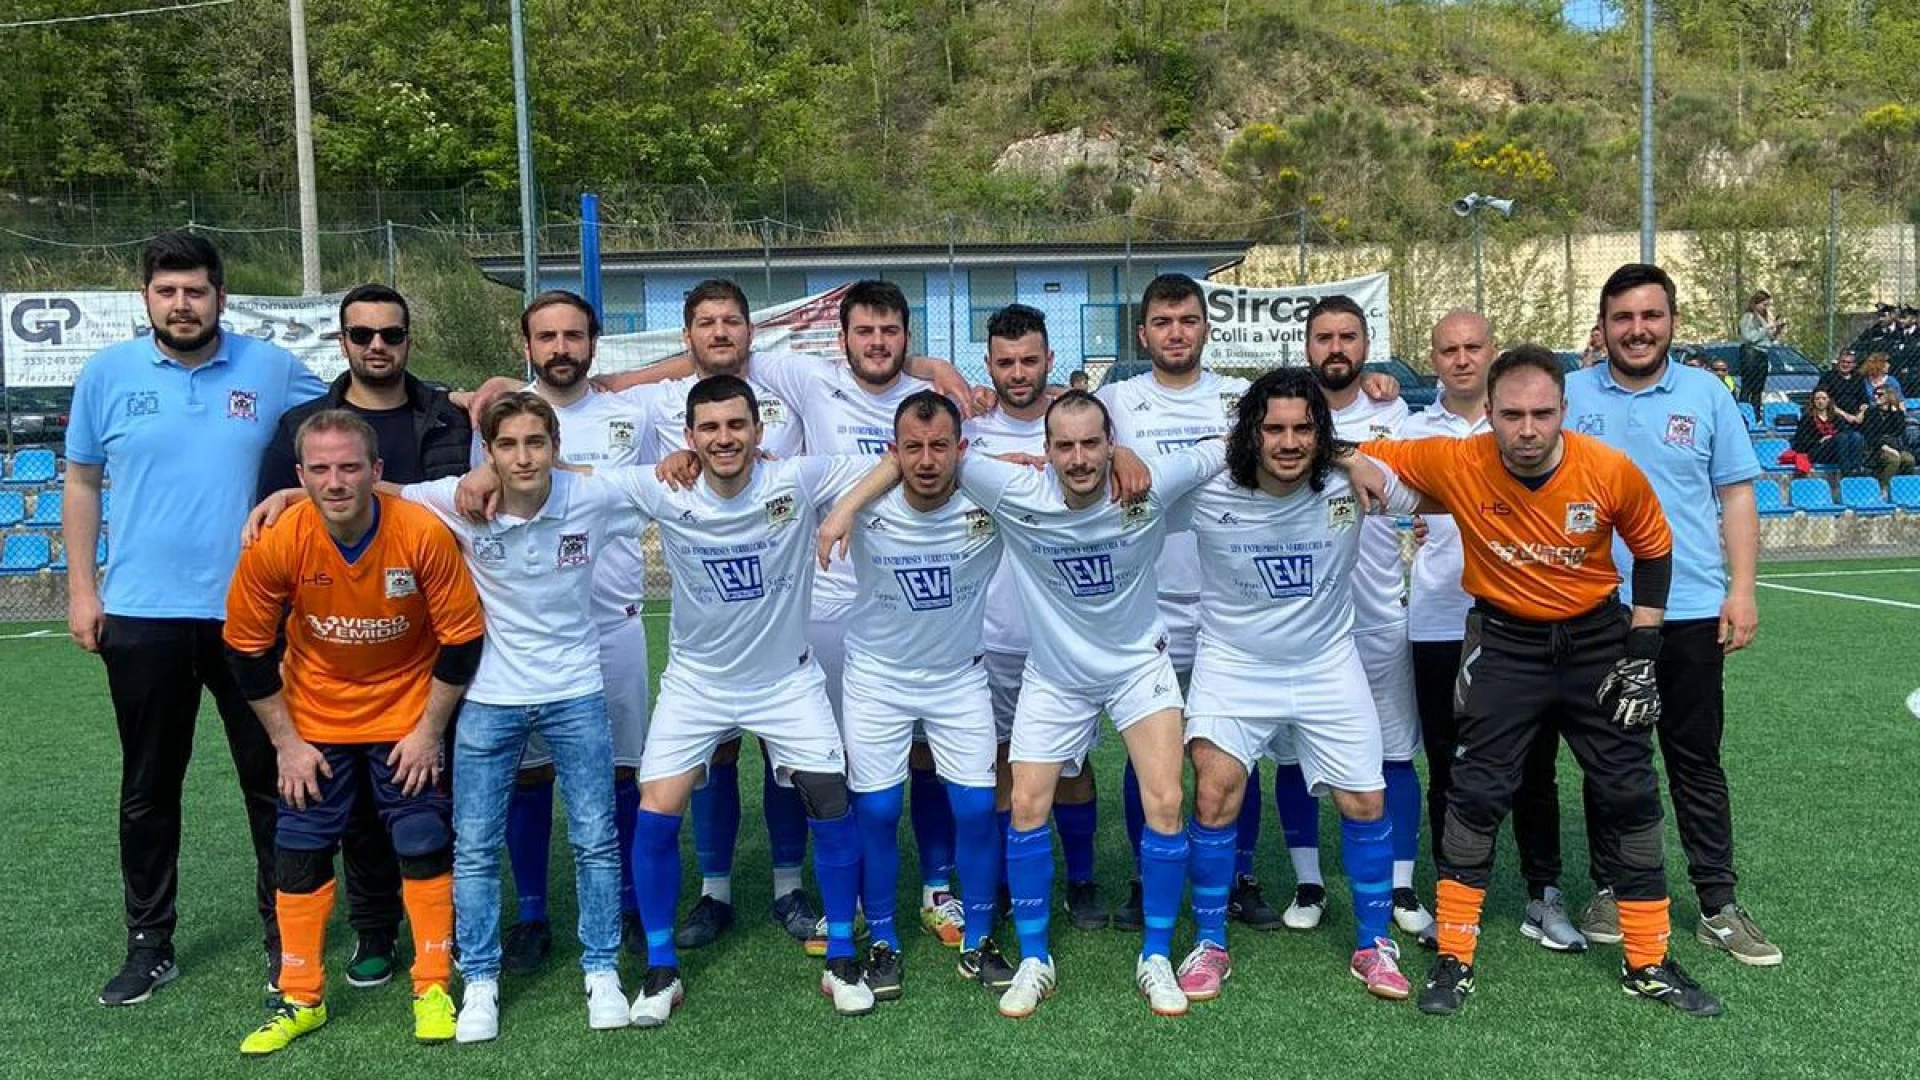 Calcio a 5: la Futsal Colli si ferma qui. La società di Colli a Volturno non si iscriverà al campionato. "Pronti a ripartire più forti in futuro".